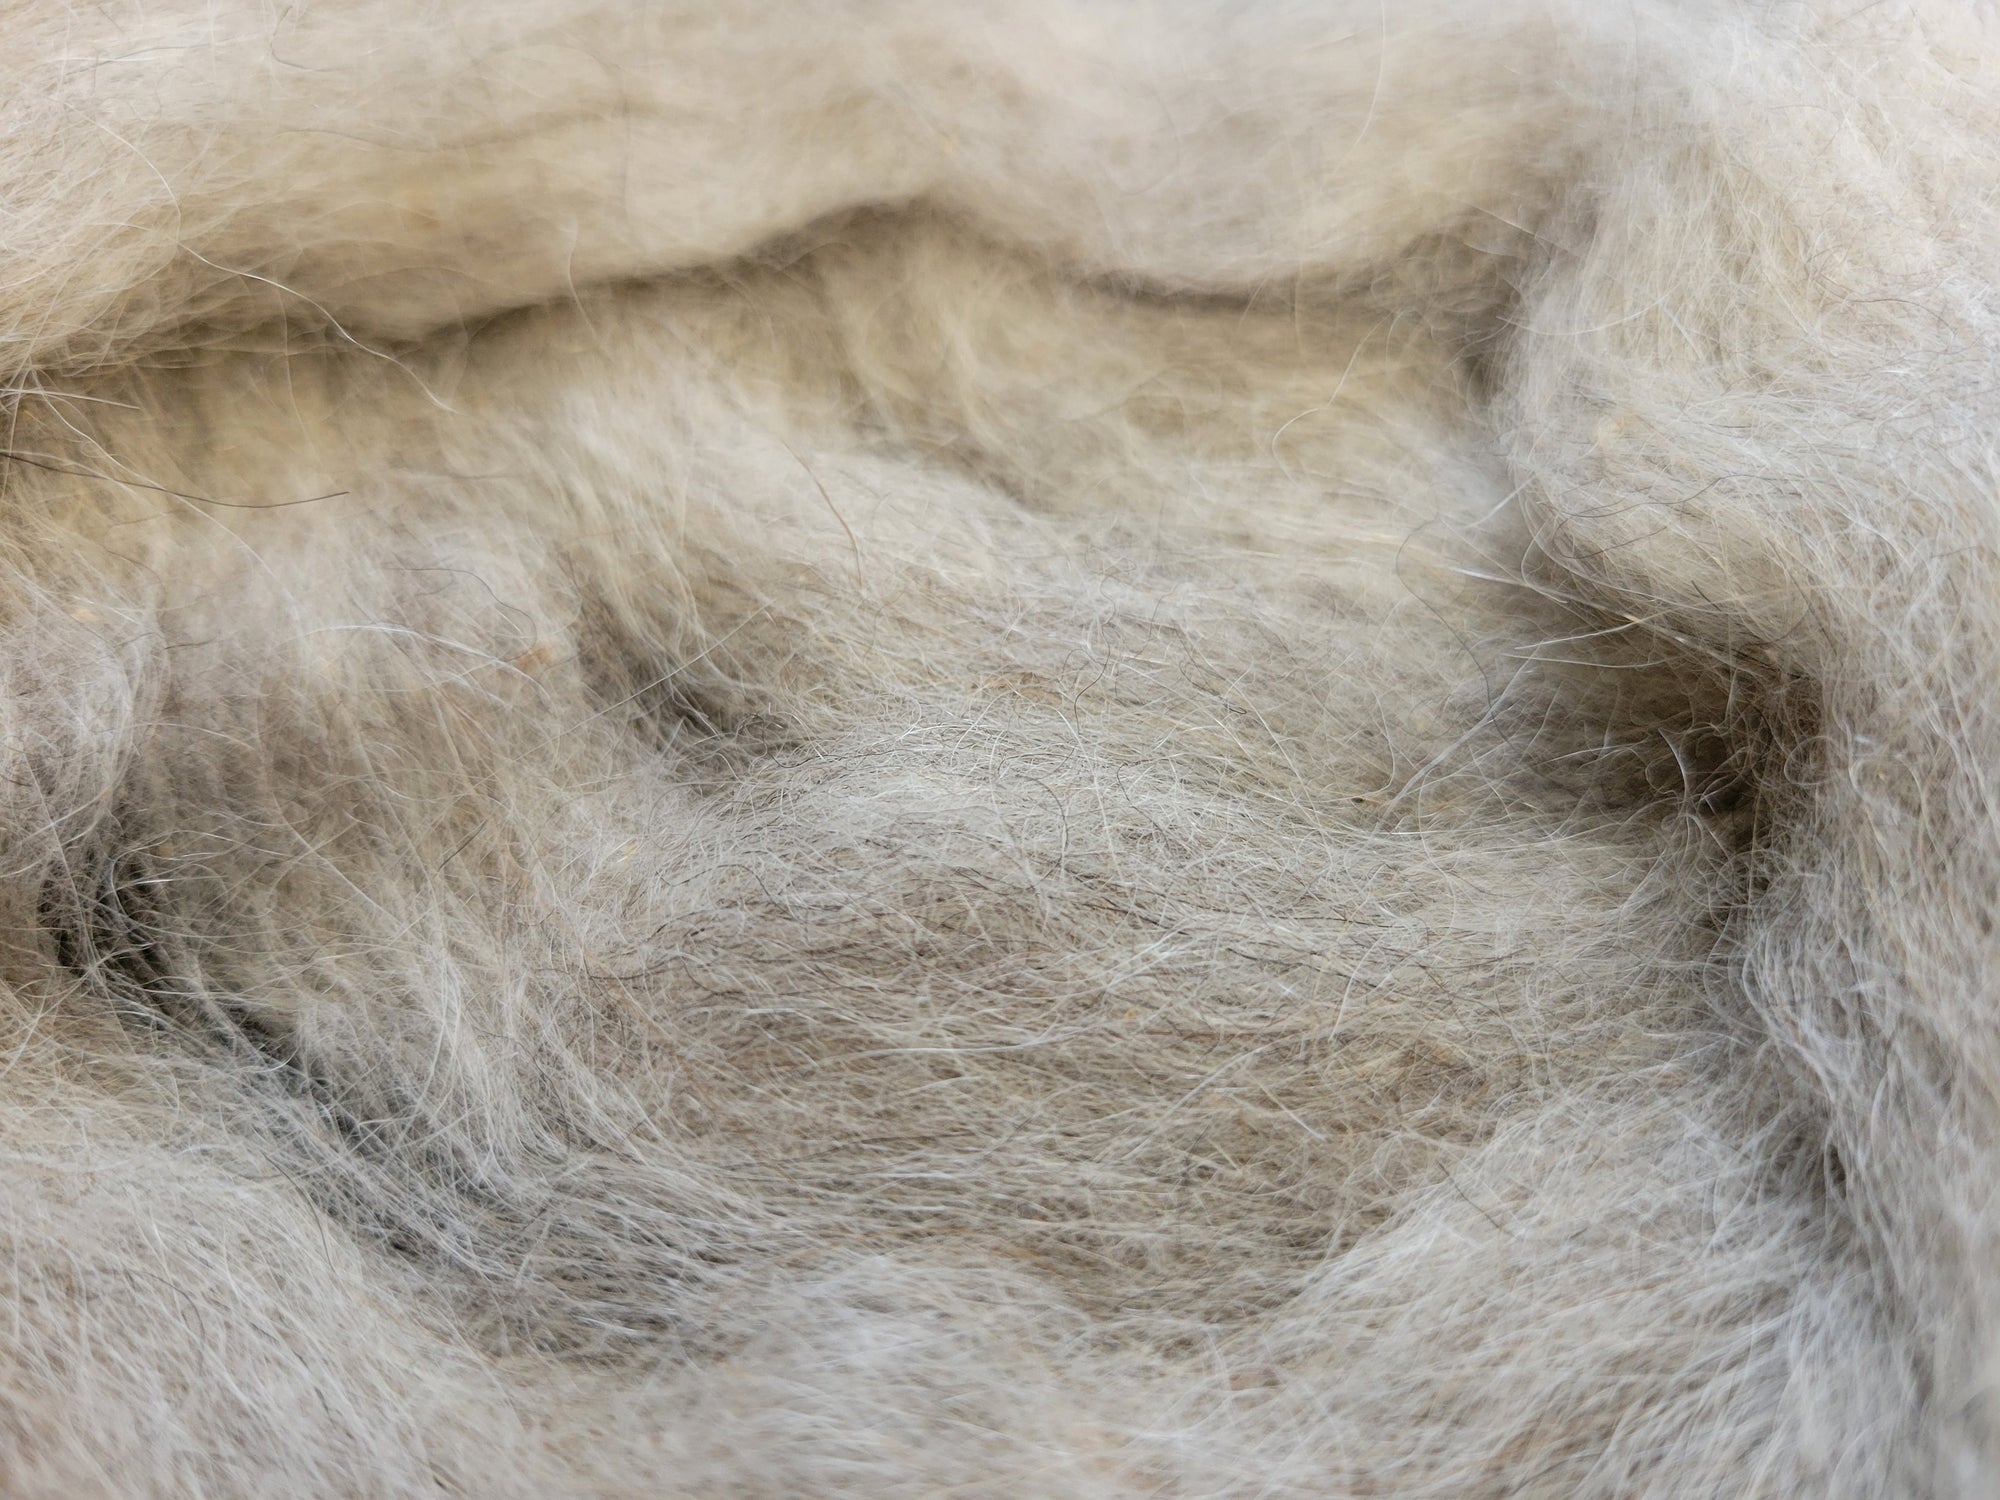 Icelandic Sheep Wool Roving